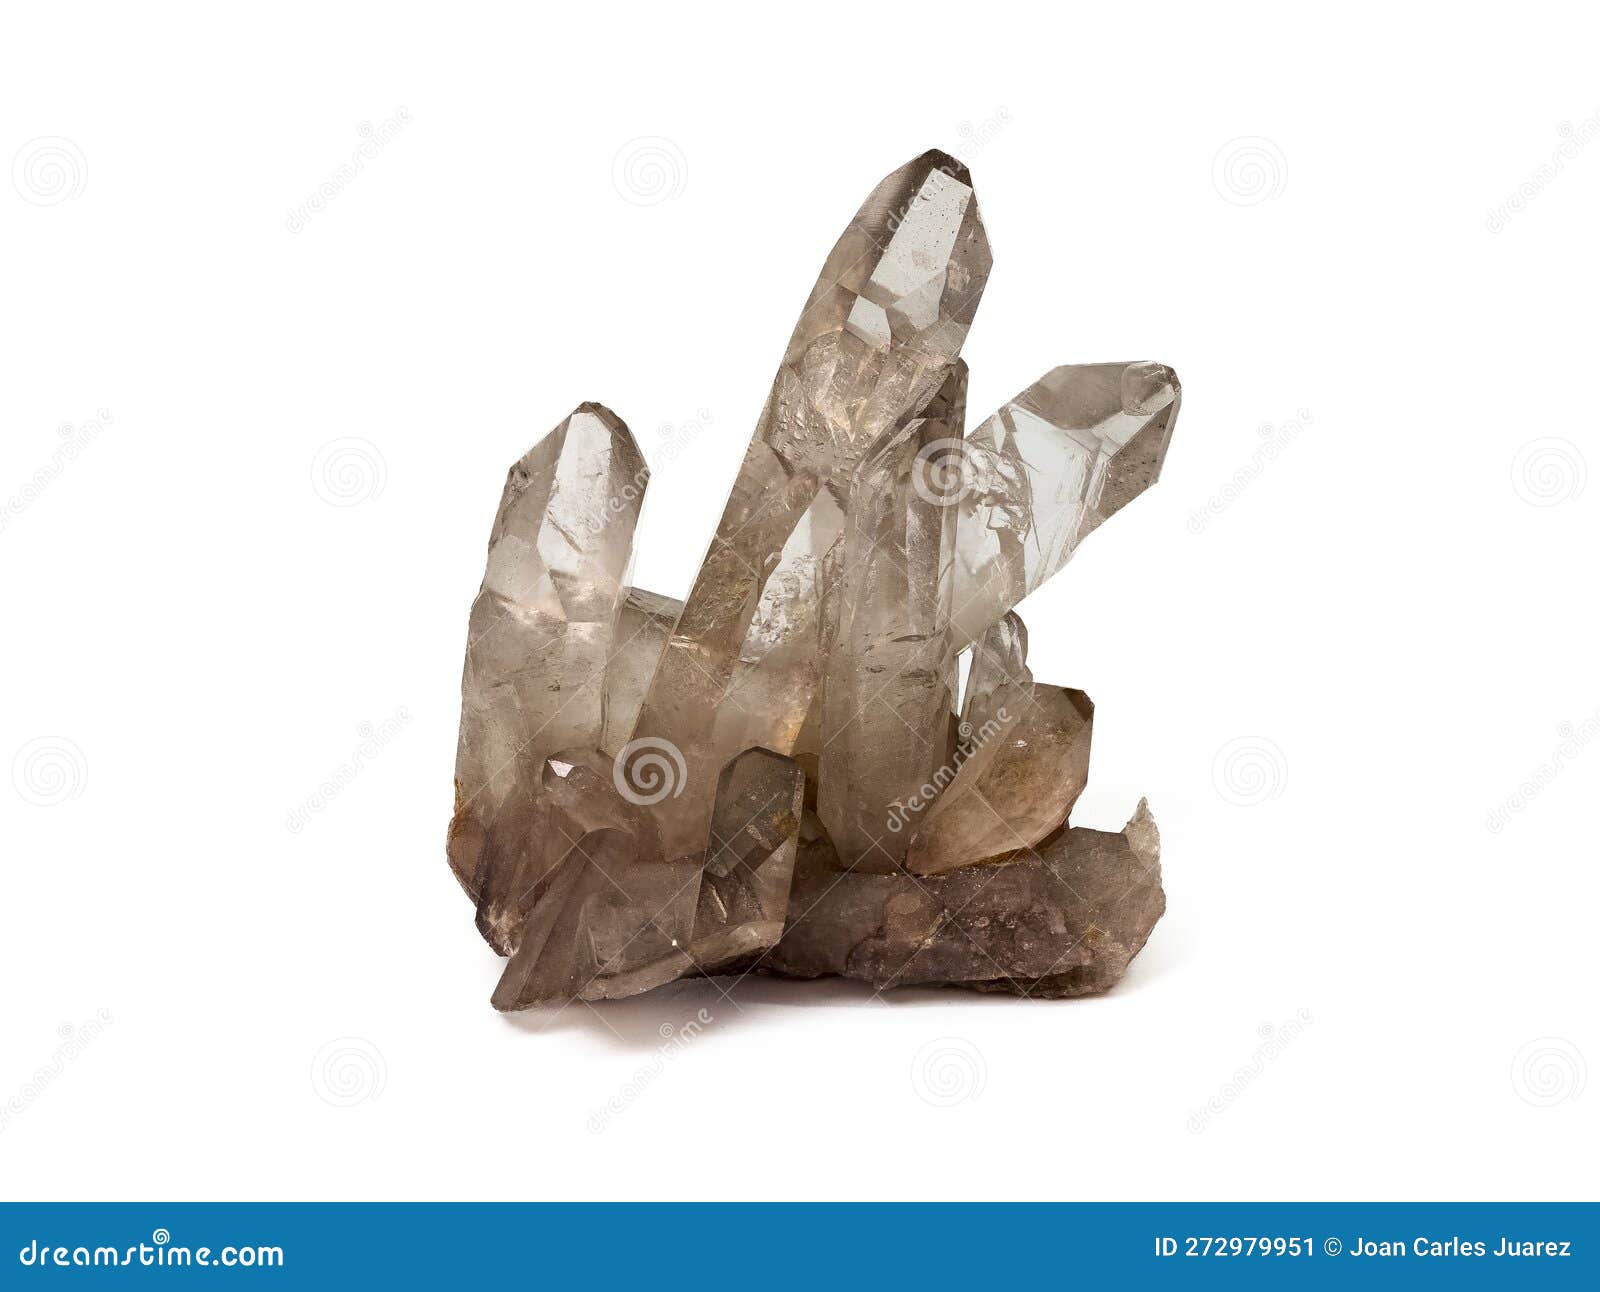 https://thumbs.dreamstime.com/z/amas-de-cristaux-quartz-isol%C3%A9s-avec-fond-blanc-macro-fermer-une-grappe-isol%C3%A9e-272979951.jpg